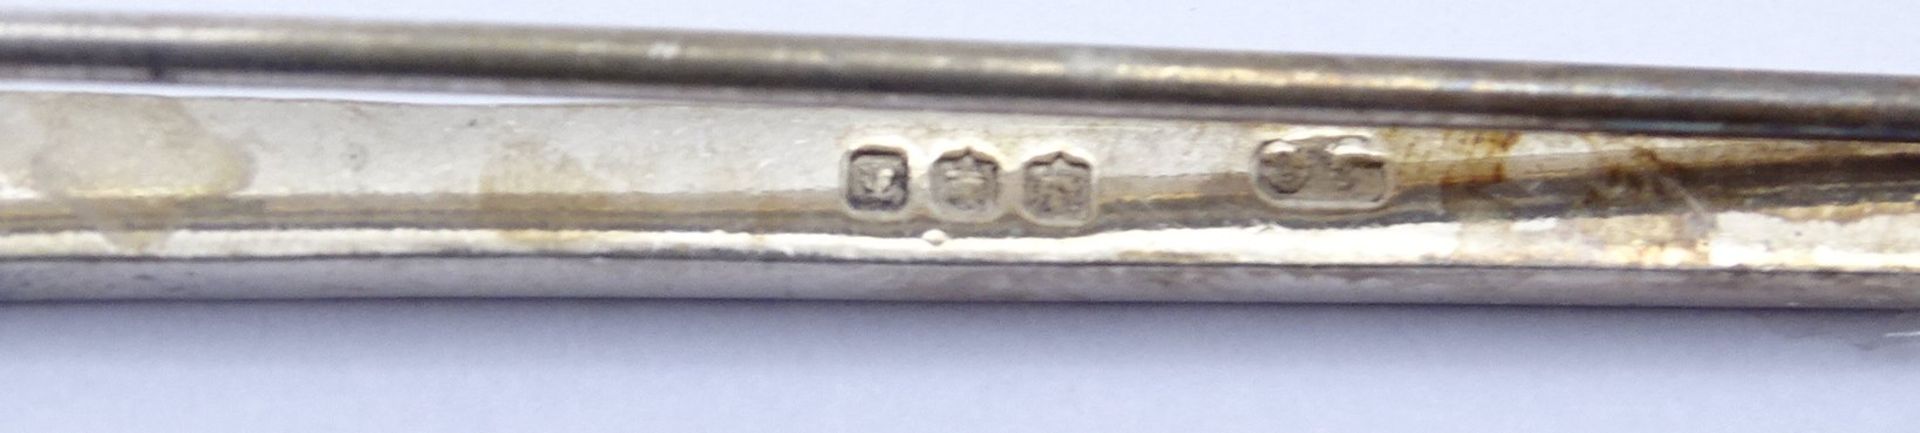 Brosche in Form eines Schwertes, L. 8,0cm, Silber, 7,2g. - Bild 3 aus 3